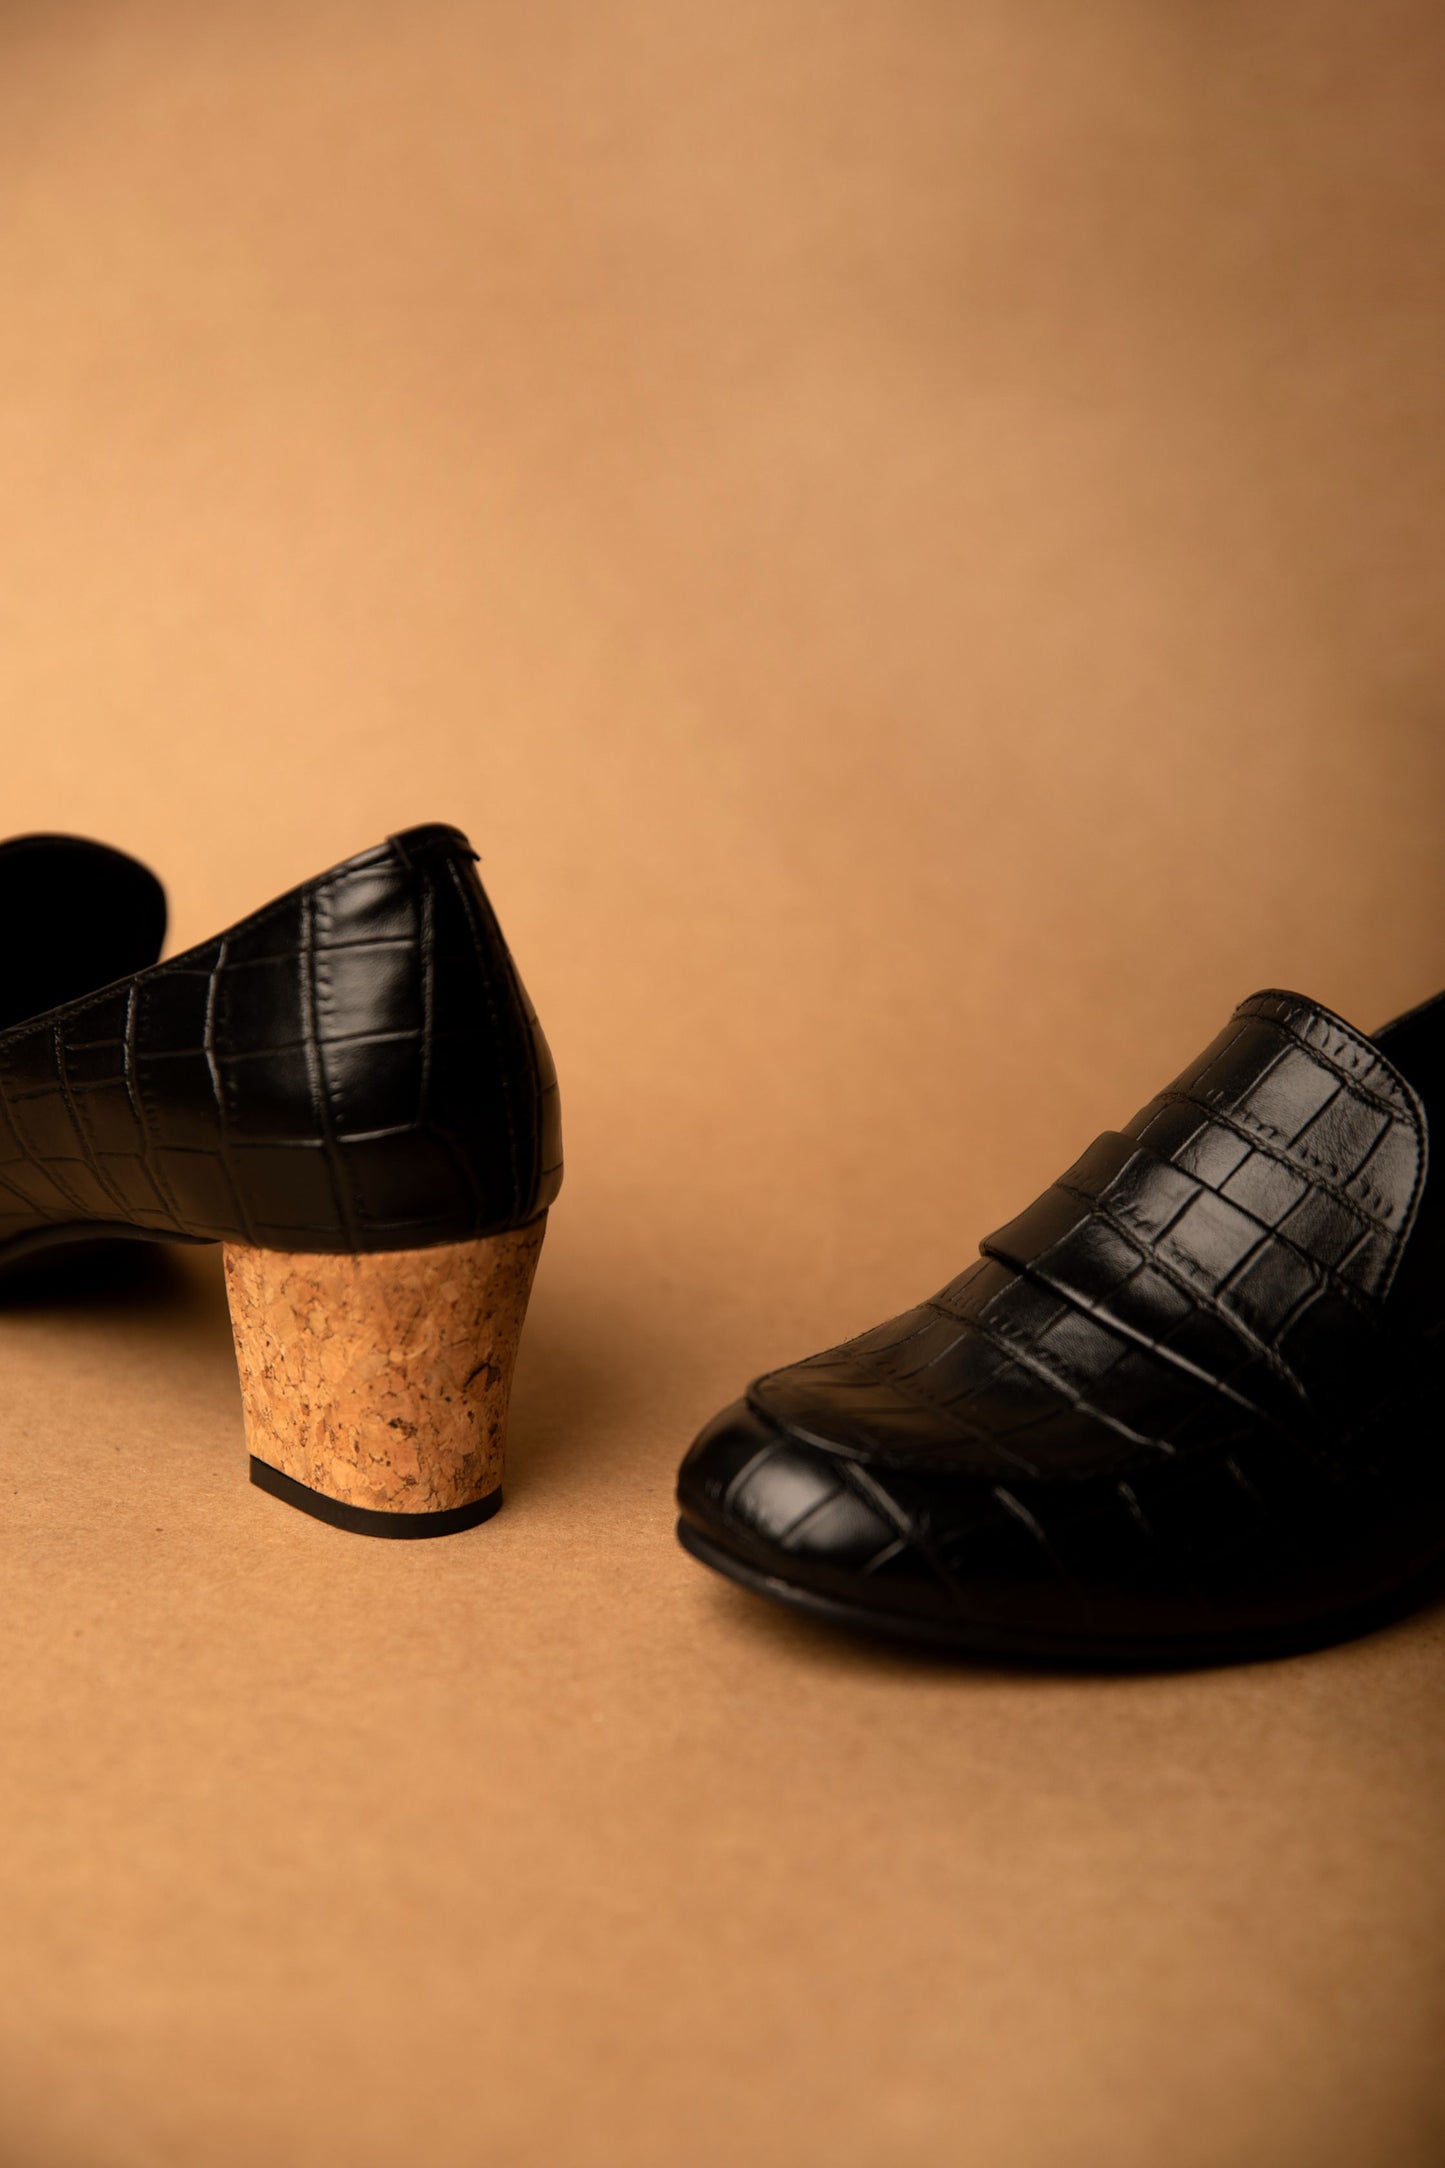 Black Block Heel Shoes For Women